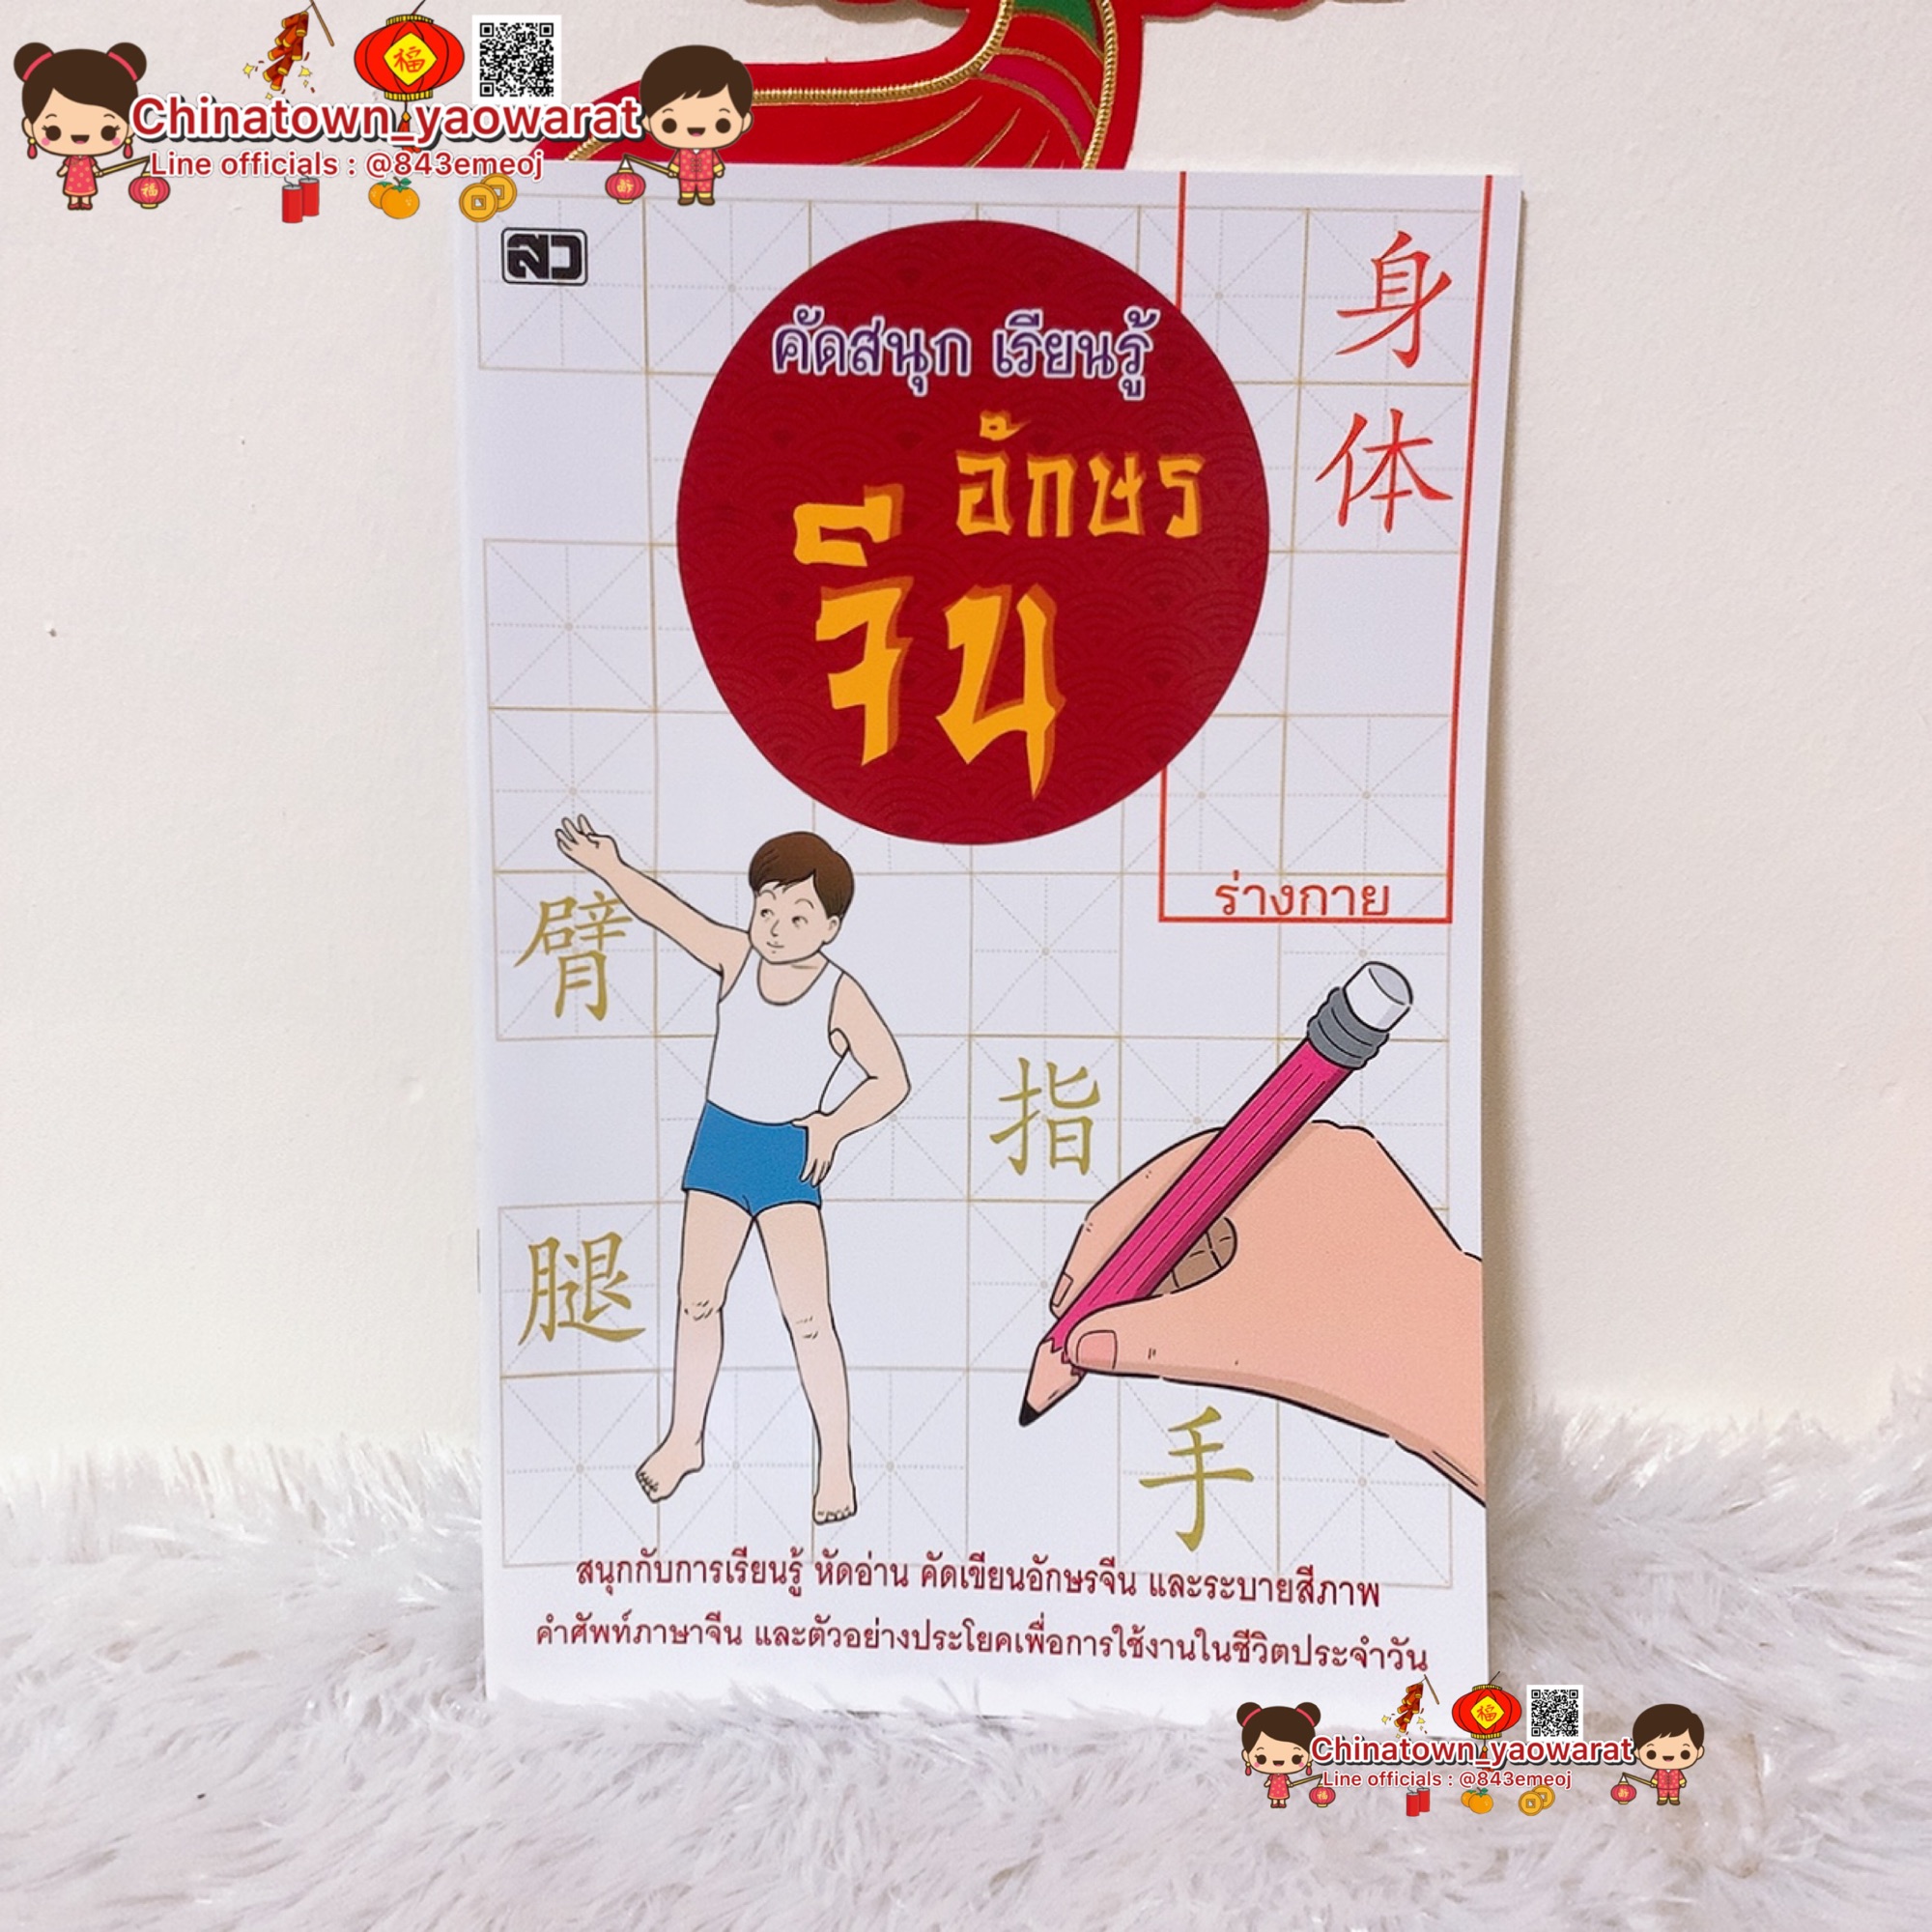 หนังสือ คัดสนุก เรียนรู้ อักษรจีน?เล่มขาว หมวด ร่างกาย? คำศัพท์จีน  เรียนจีนพื้นฐาน พินอิน สมุดคัดจีน ตารางคัดคำศัพท์